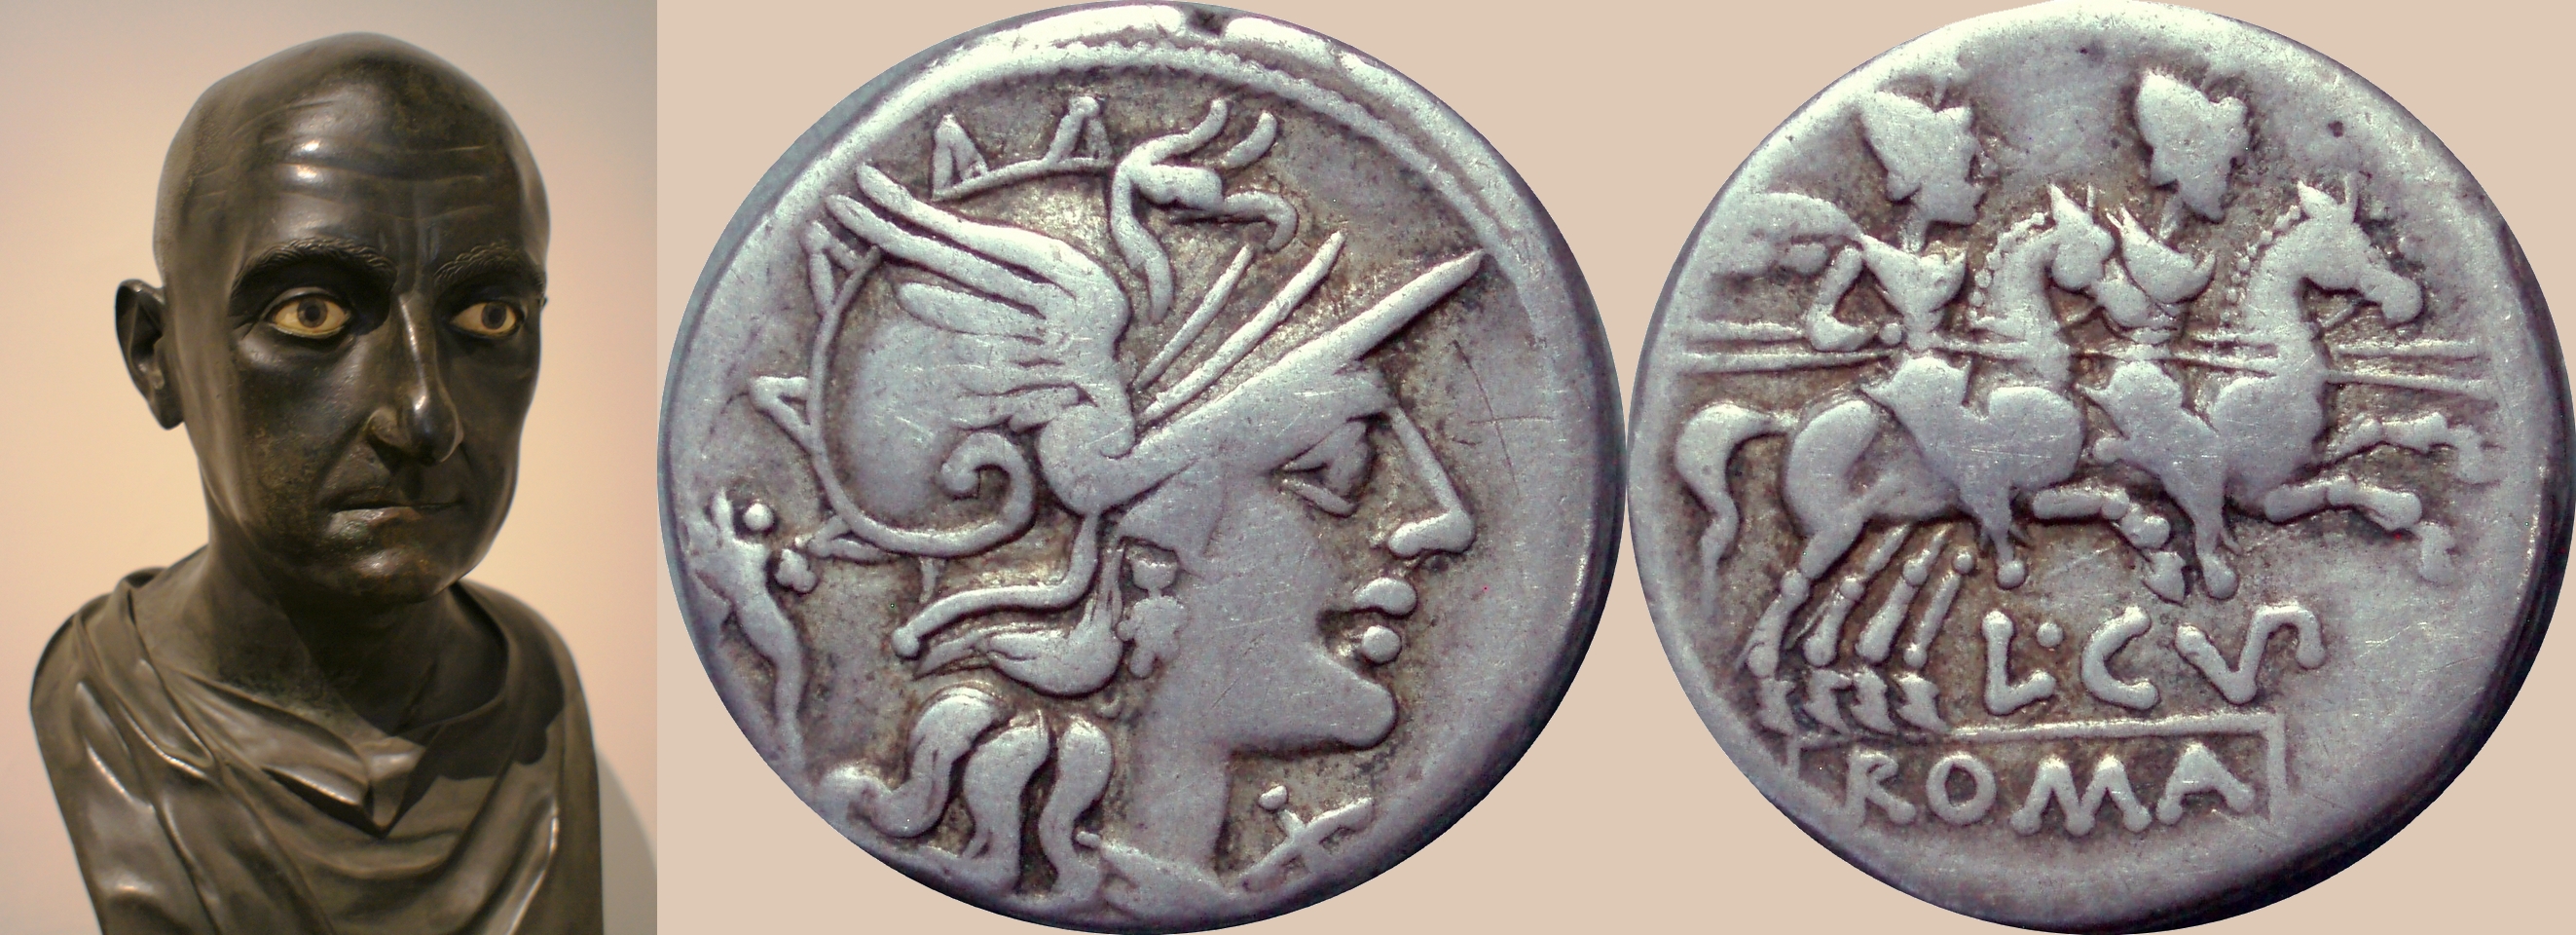 218/1 coin of Cupiennia, 147BC, in the Consulship of Scipio Aemilianus leader of third Punic war against Carthage, with a bust of Scipio Aemilianus 185-129BC